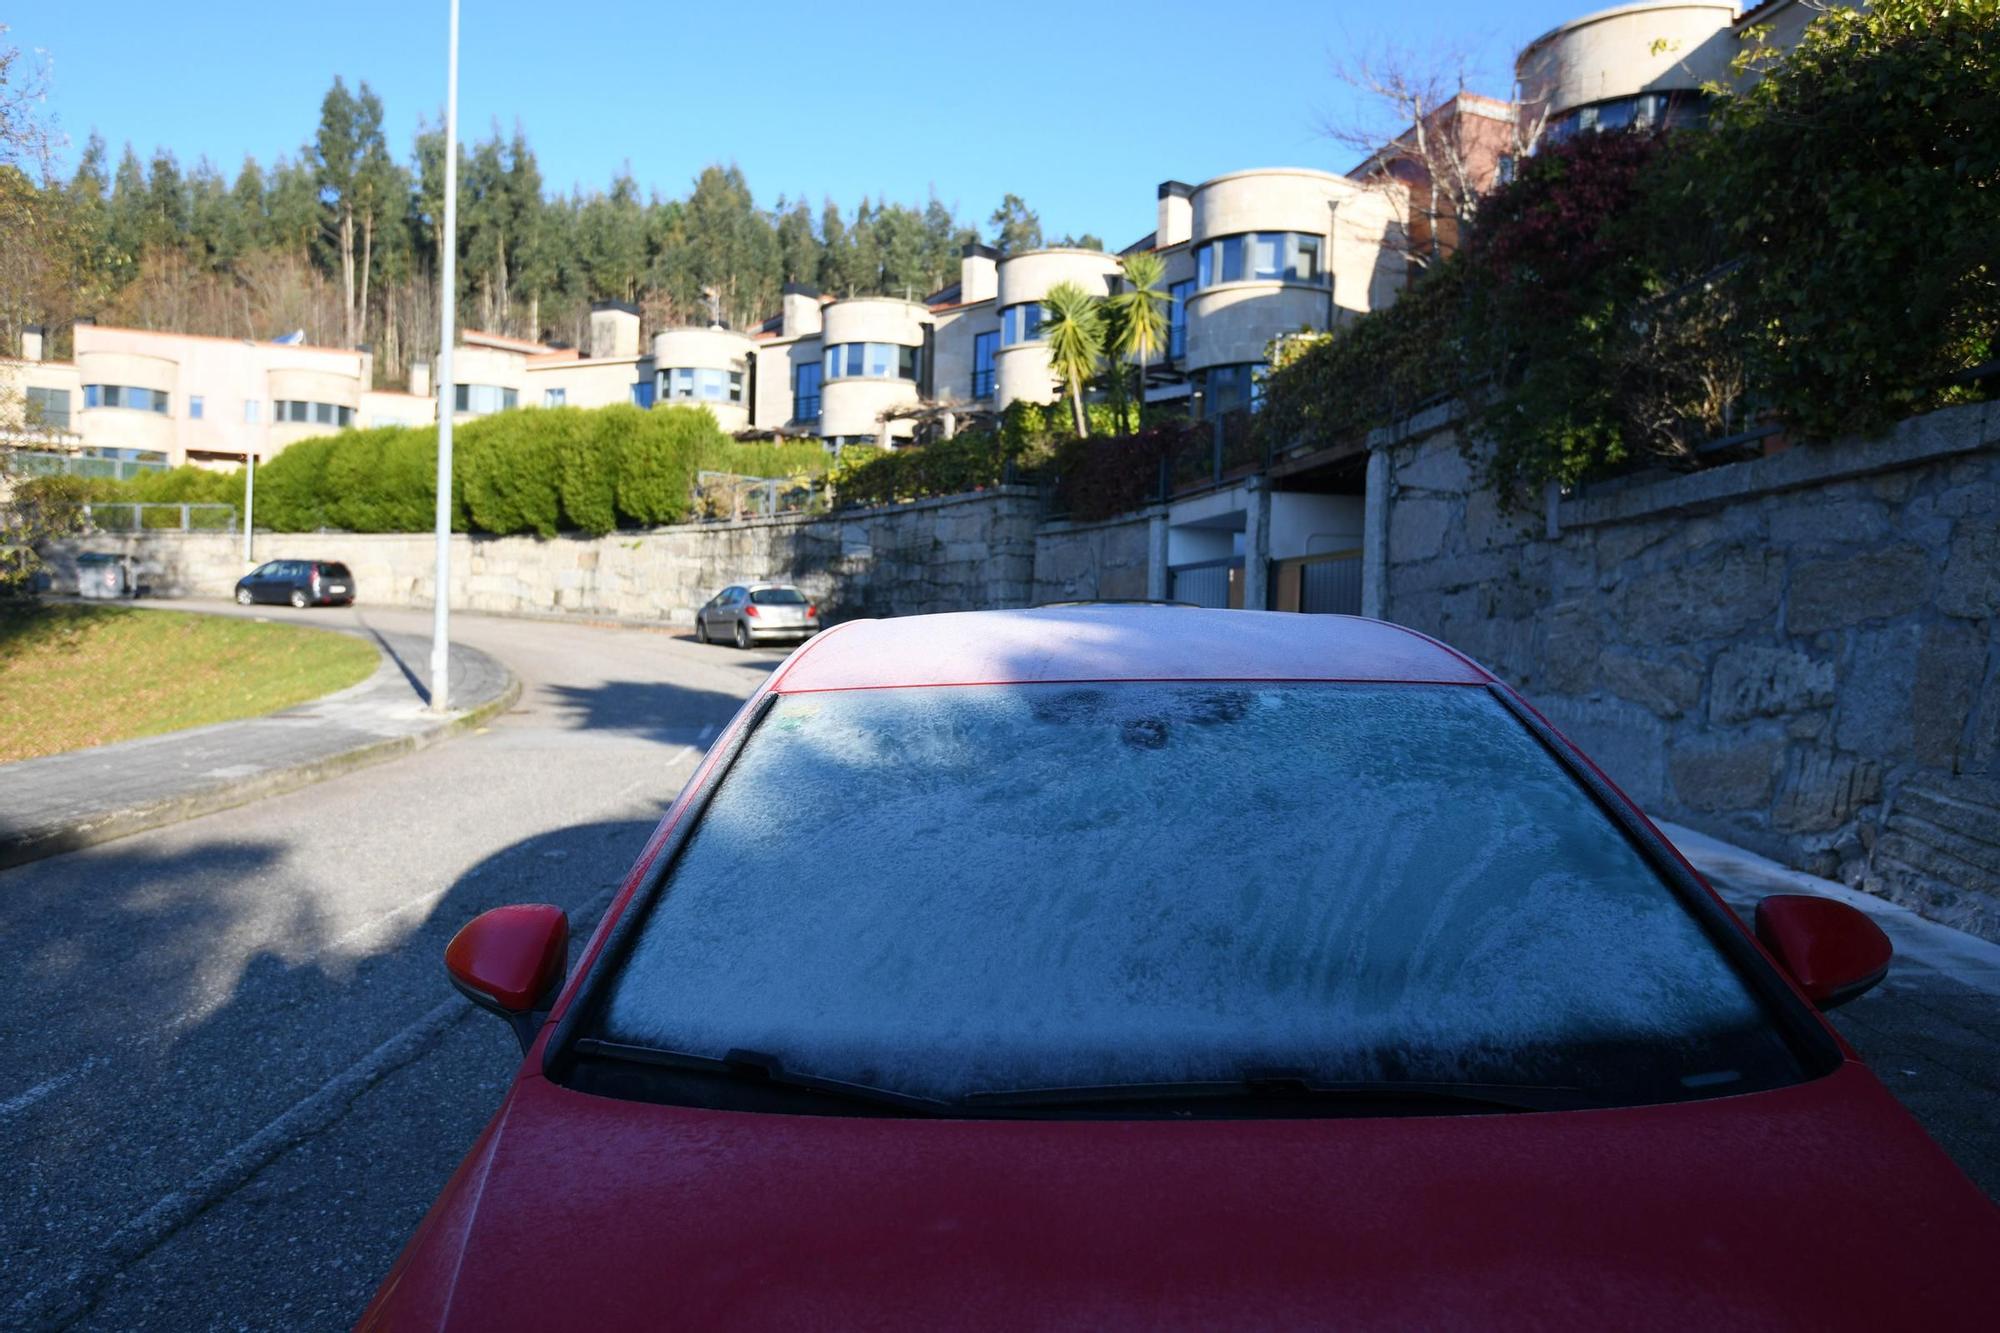 El tiempo en Galicia | Temperaturas bajo cero hielan la comarca de Pontevedra